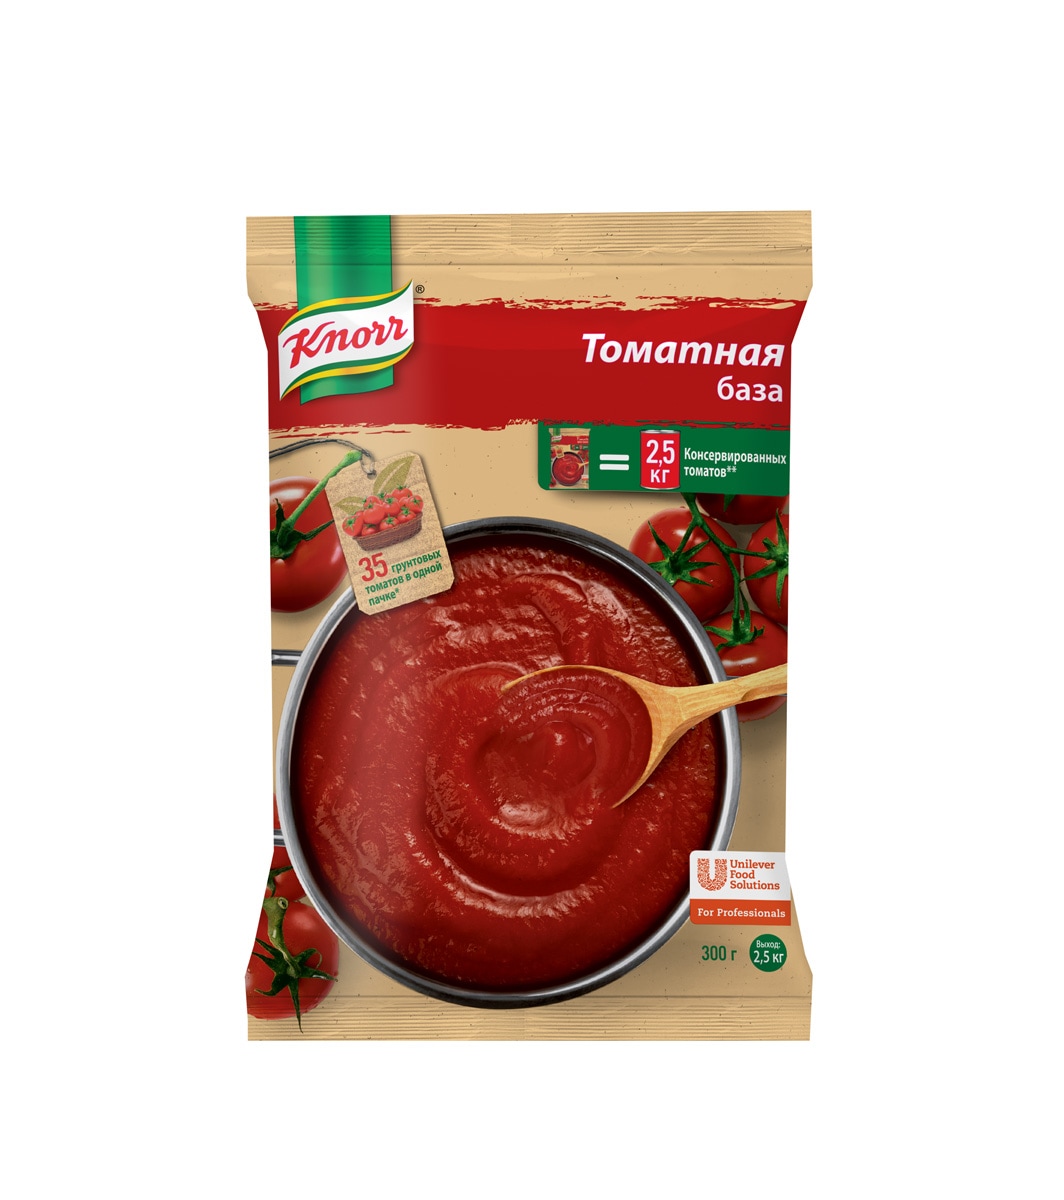 KNORR Томатная база Сухая смесь (300г) - Сухой продукт: красно-оранжевый сыпучий порошок с кусочками томатных хлопьев томатного соуса.